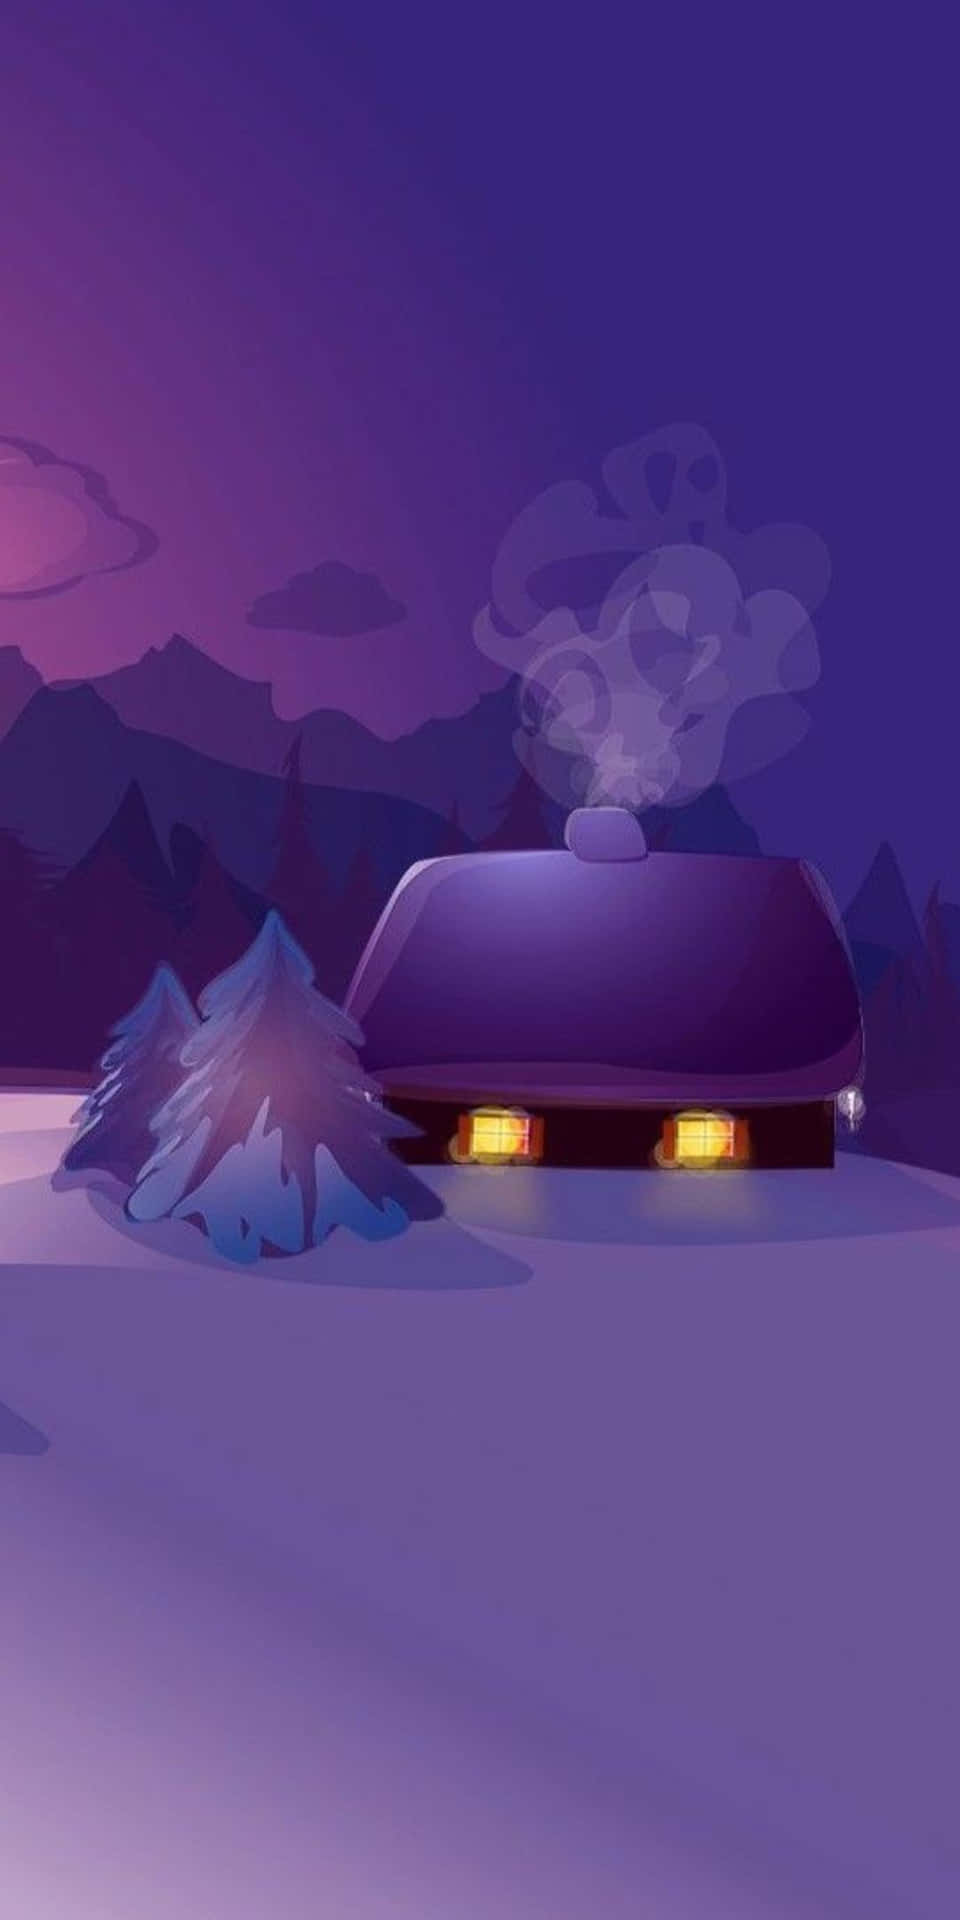 Fundode Tela De Inverno Da Cabana Desenhada Em Roxo Para O Pixel 3.